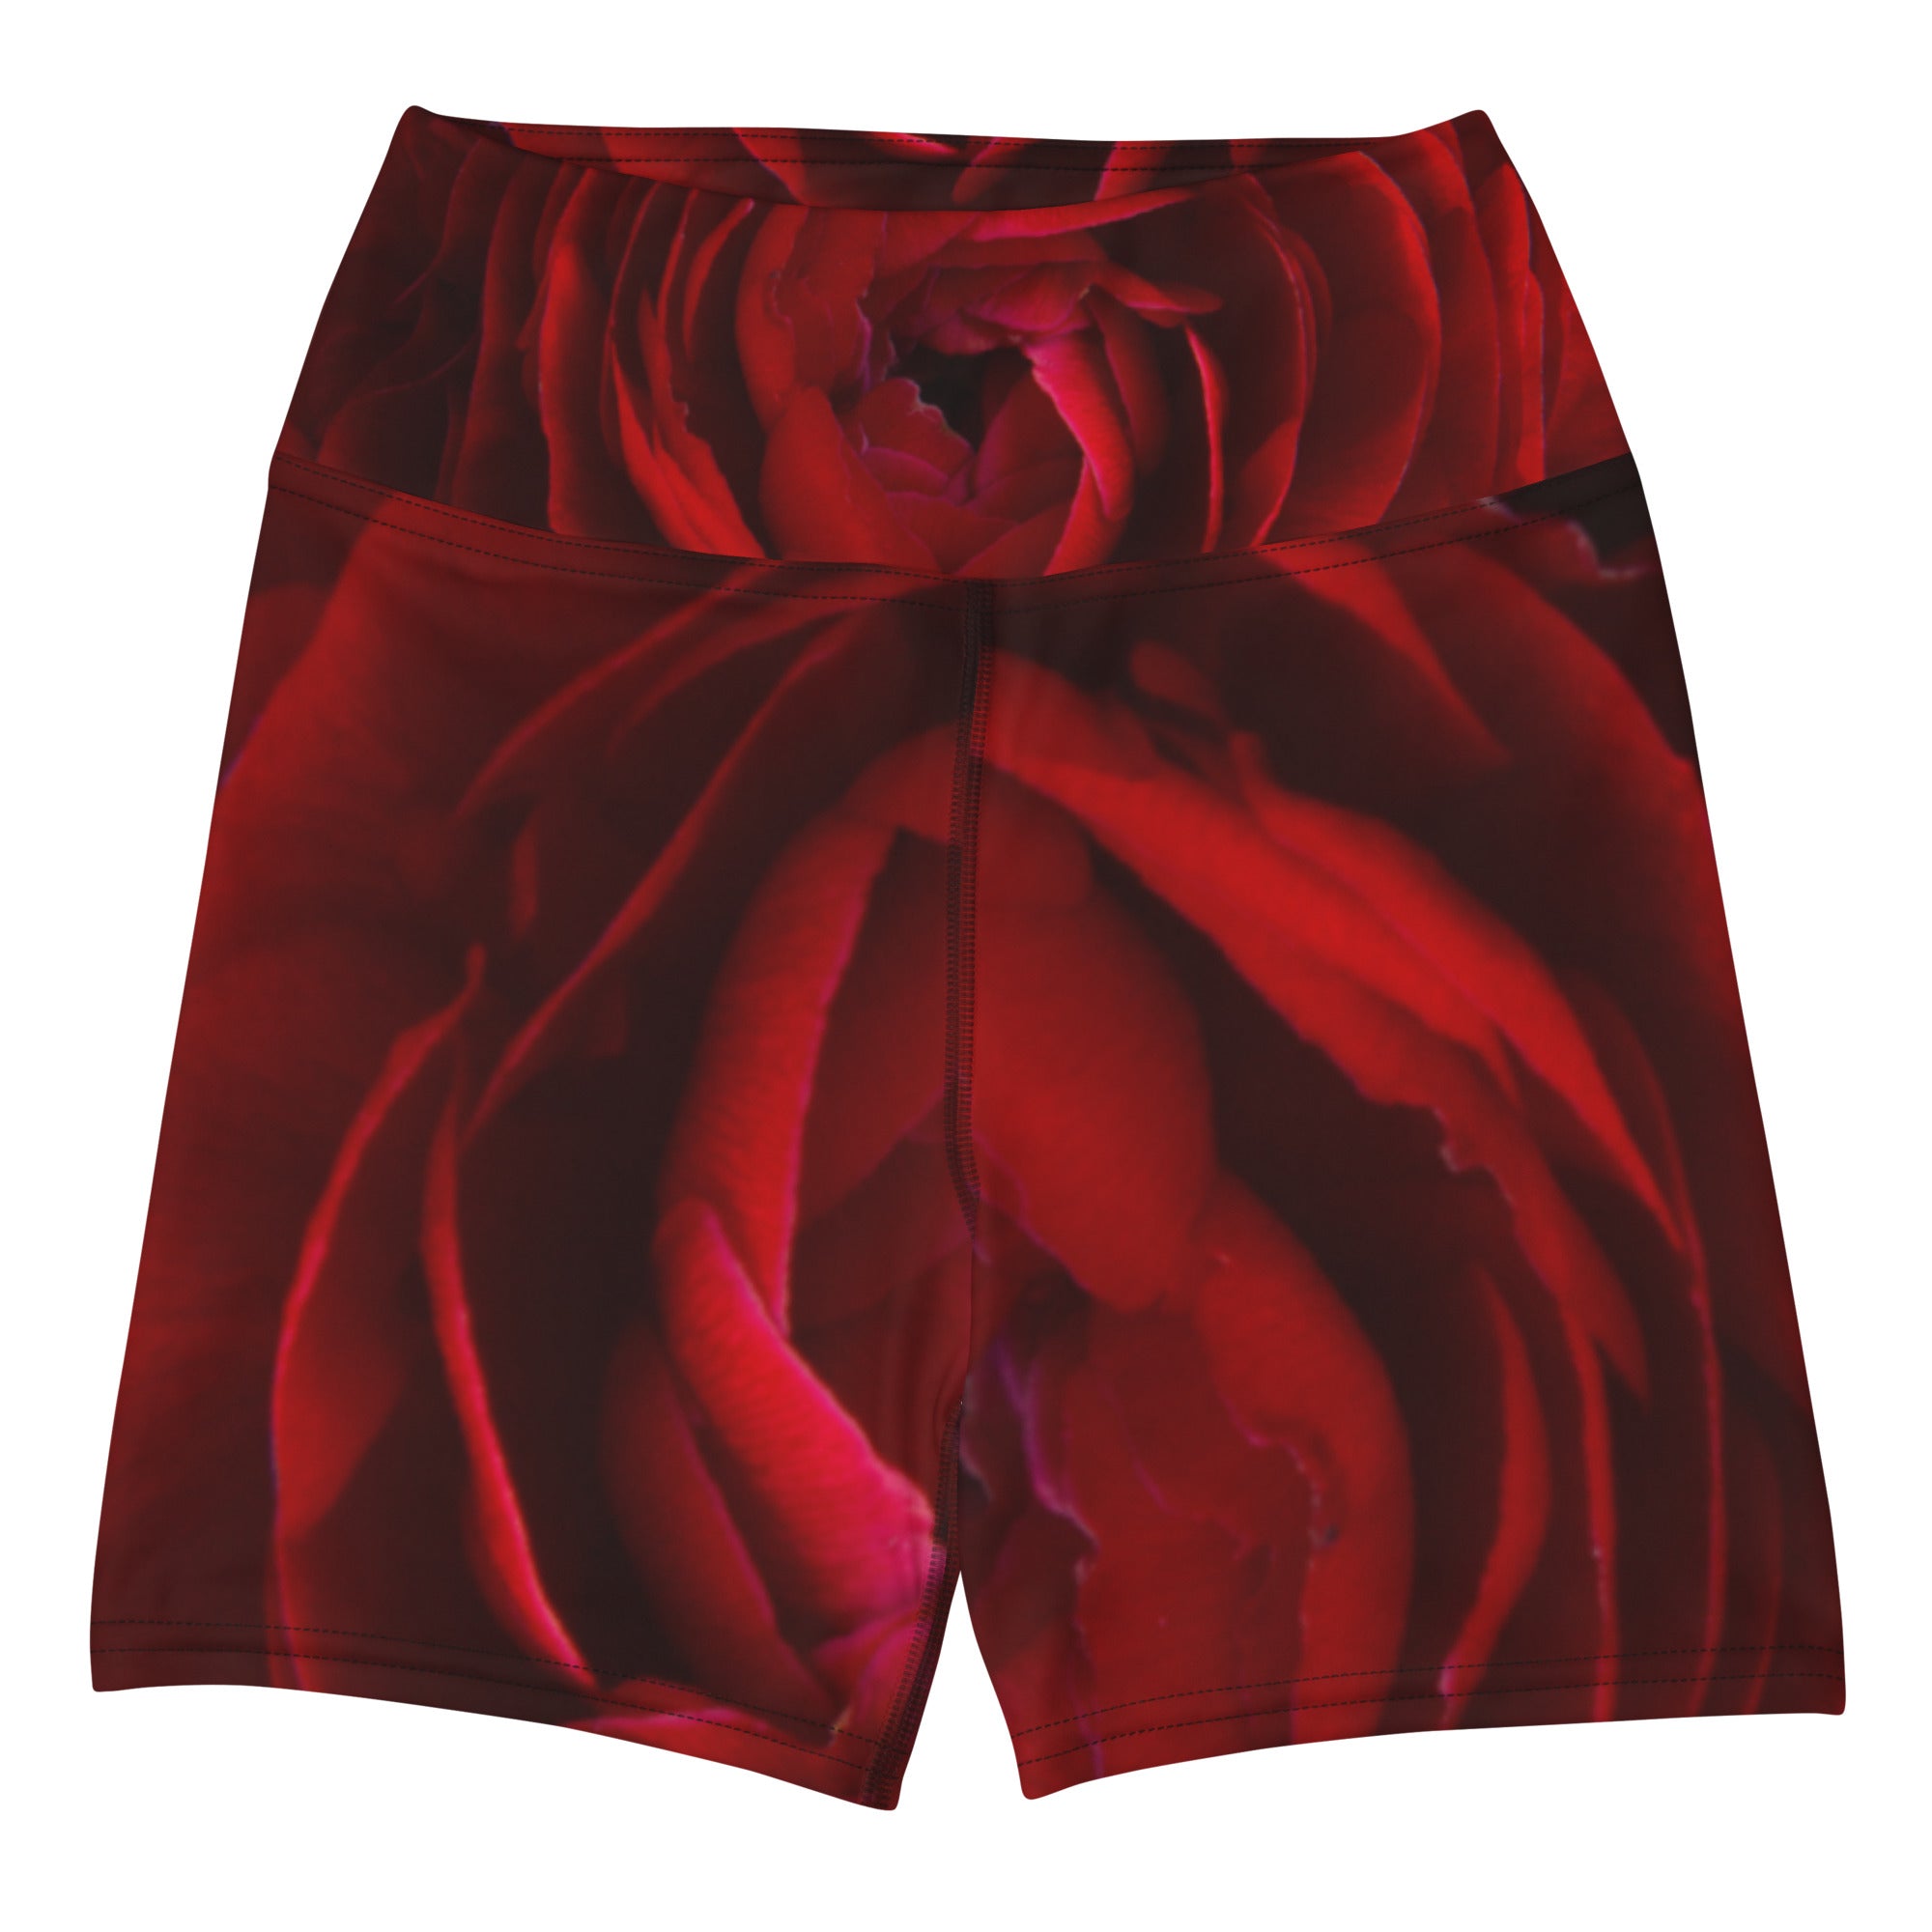 Blood Rose Yoga Shorts